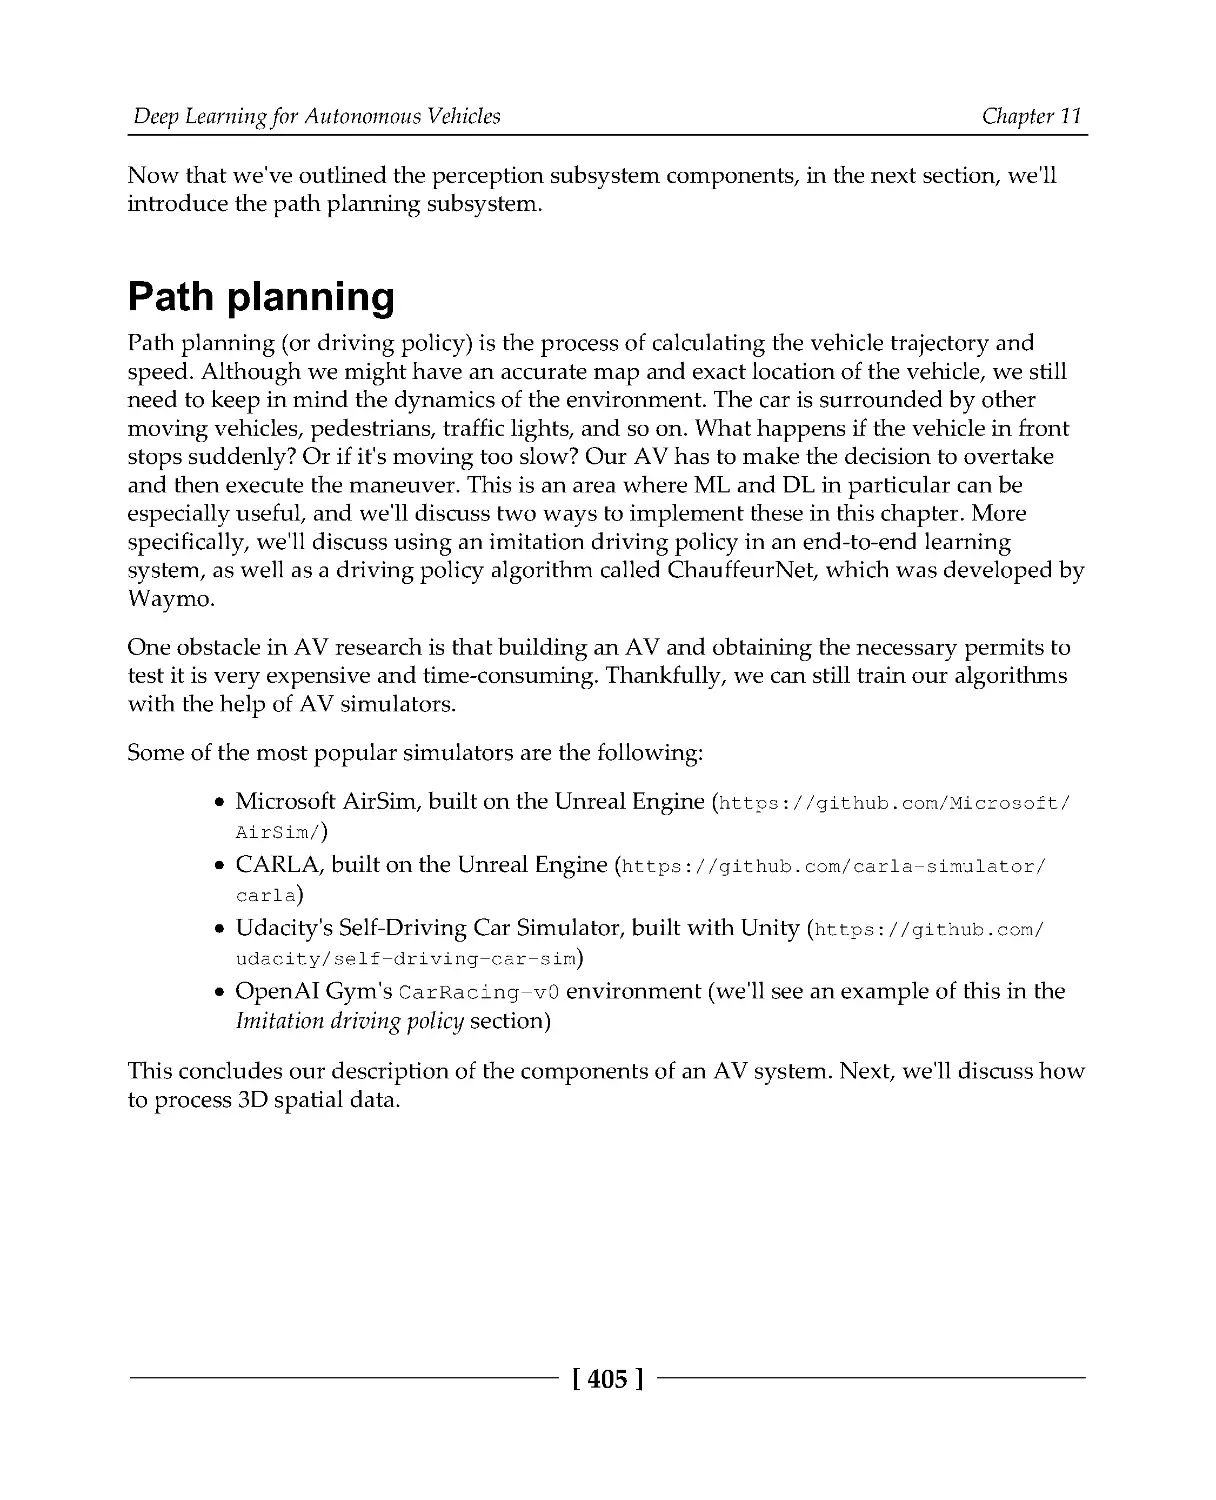 Path planning